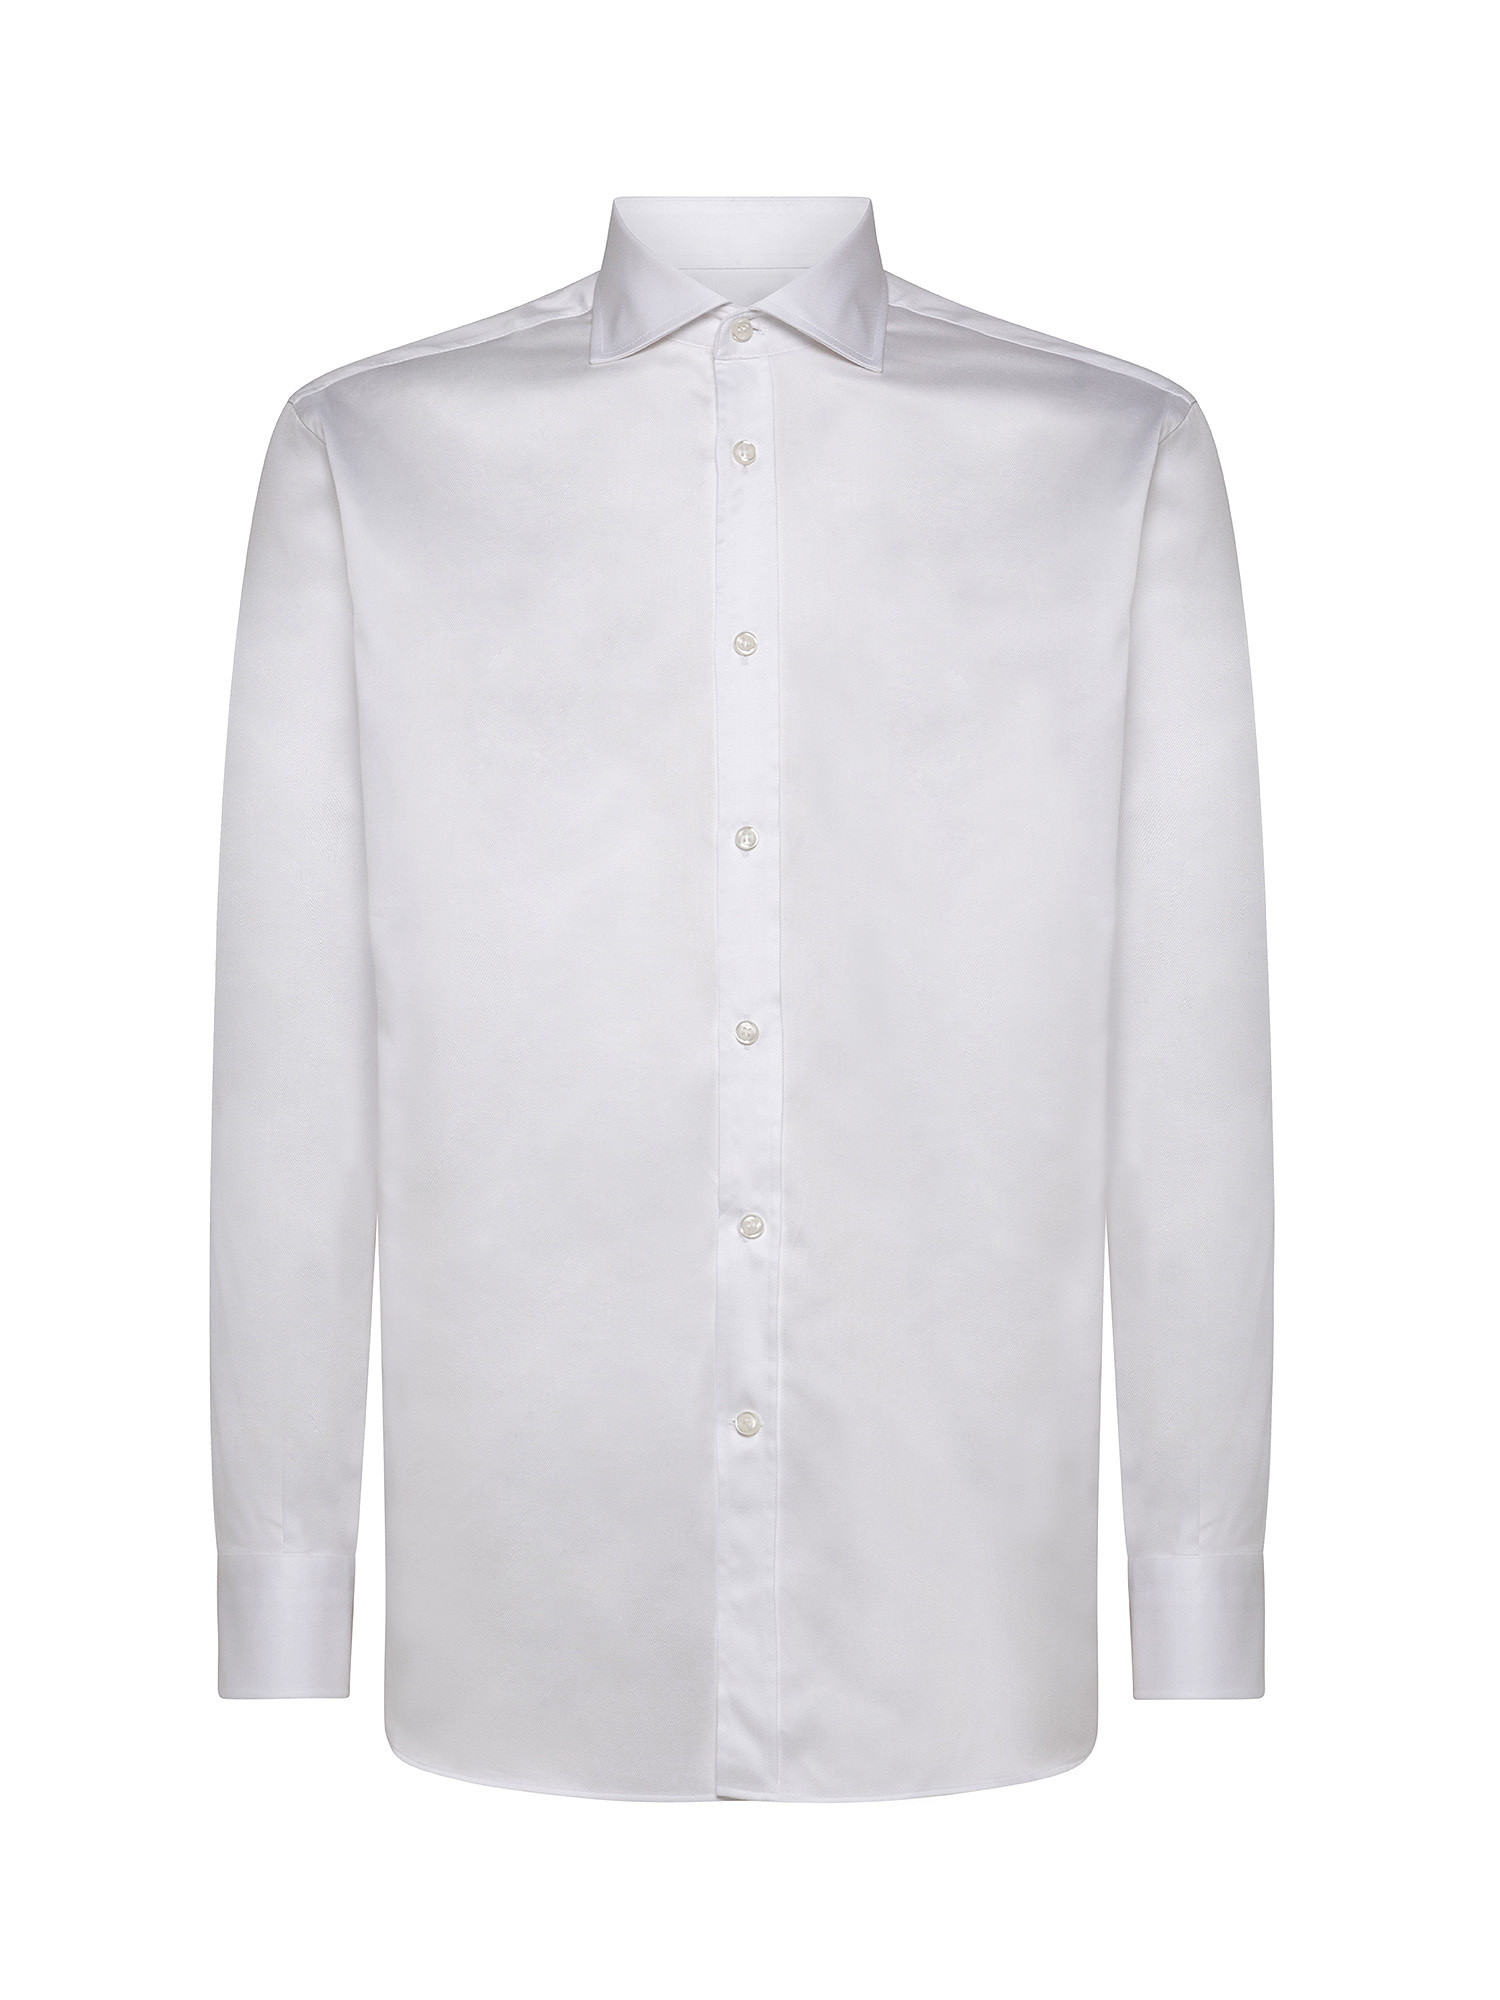 Camicia slim fit twill di cotone, Bianco, large